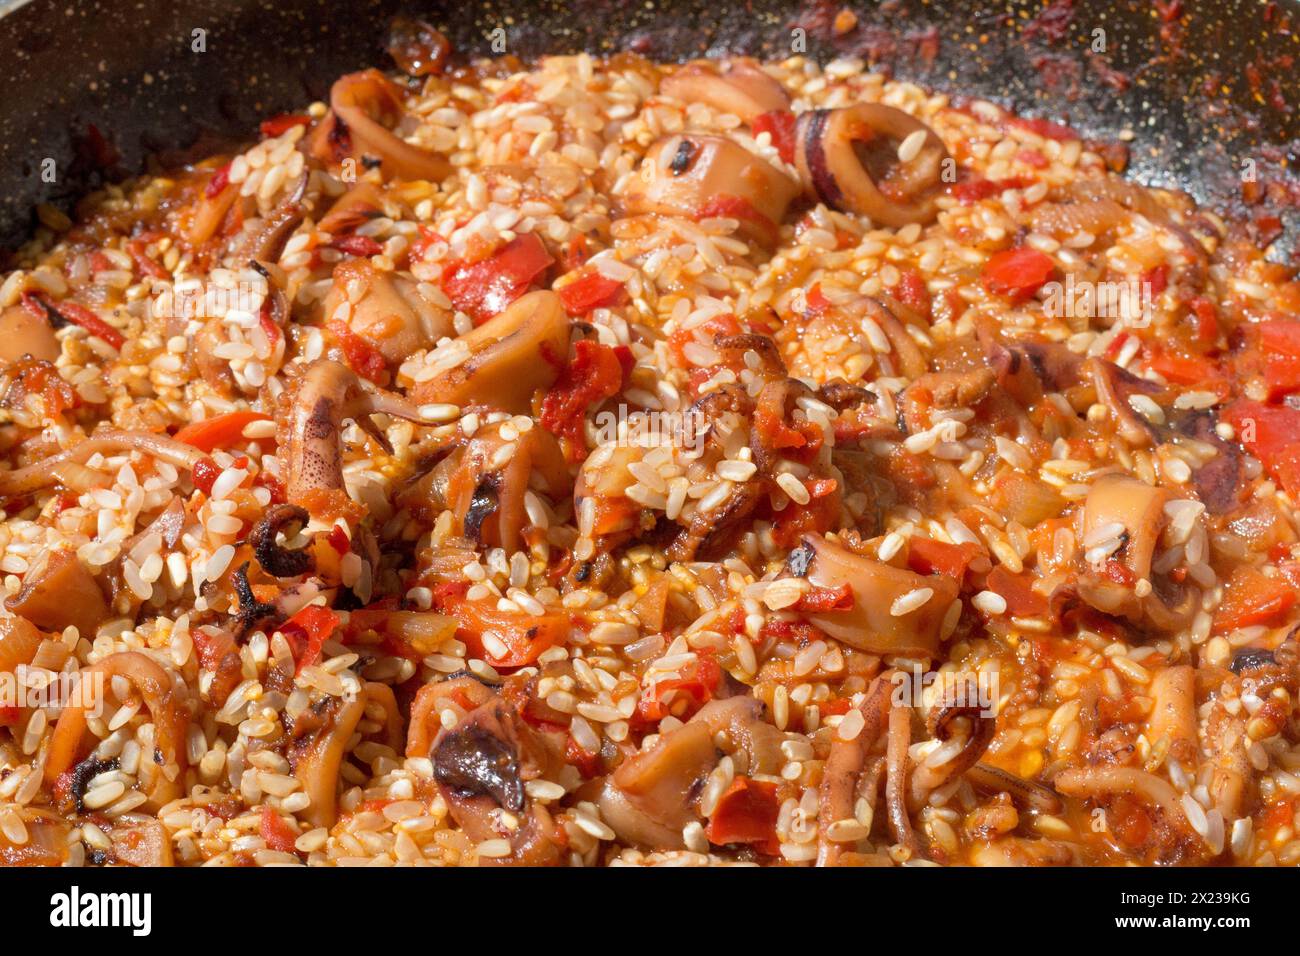 Assistez au moment charnière où le riz rejoint le sofrito aromatique, mettant en valeur l'essence de la paella espagnole traditionnelle Banque D'Images